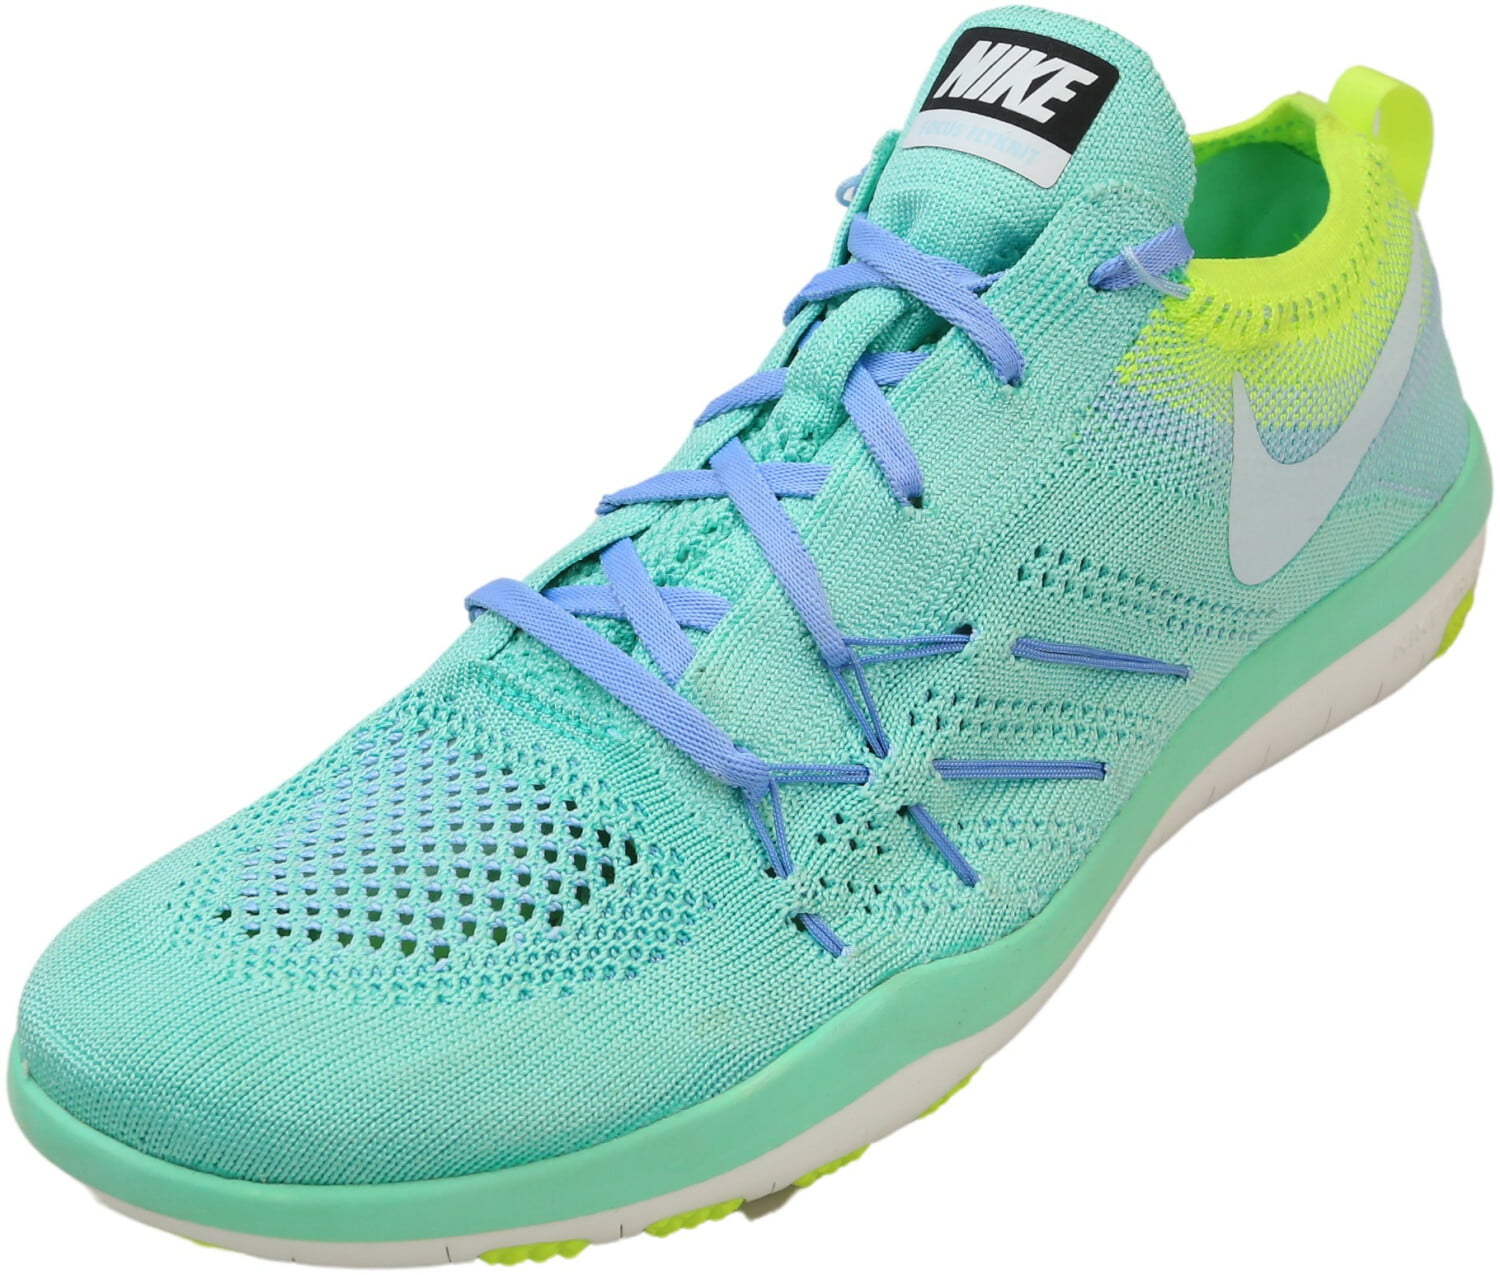 Nike Women's Free Focus Flyknit Green Glow / Glacier Blue-Volt Ankle-High Cross 8.5M - Walmart.com